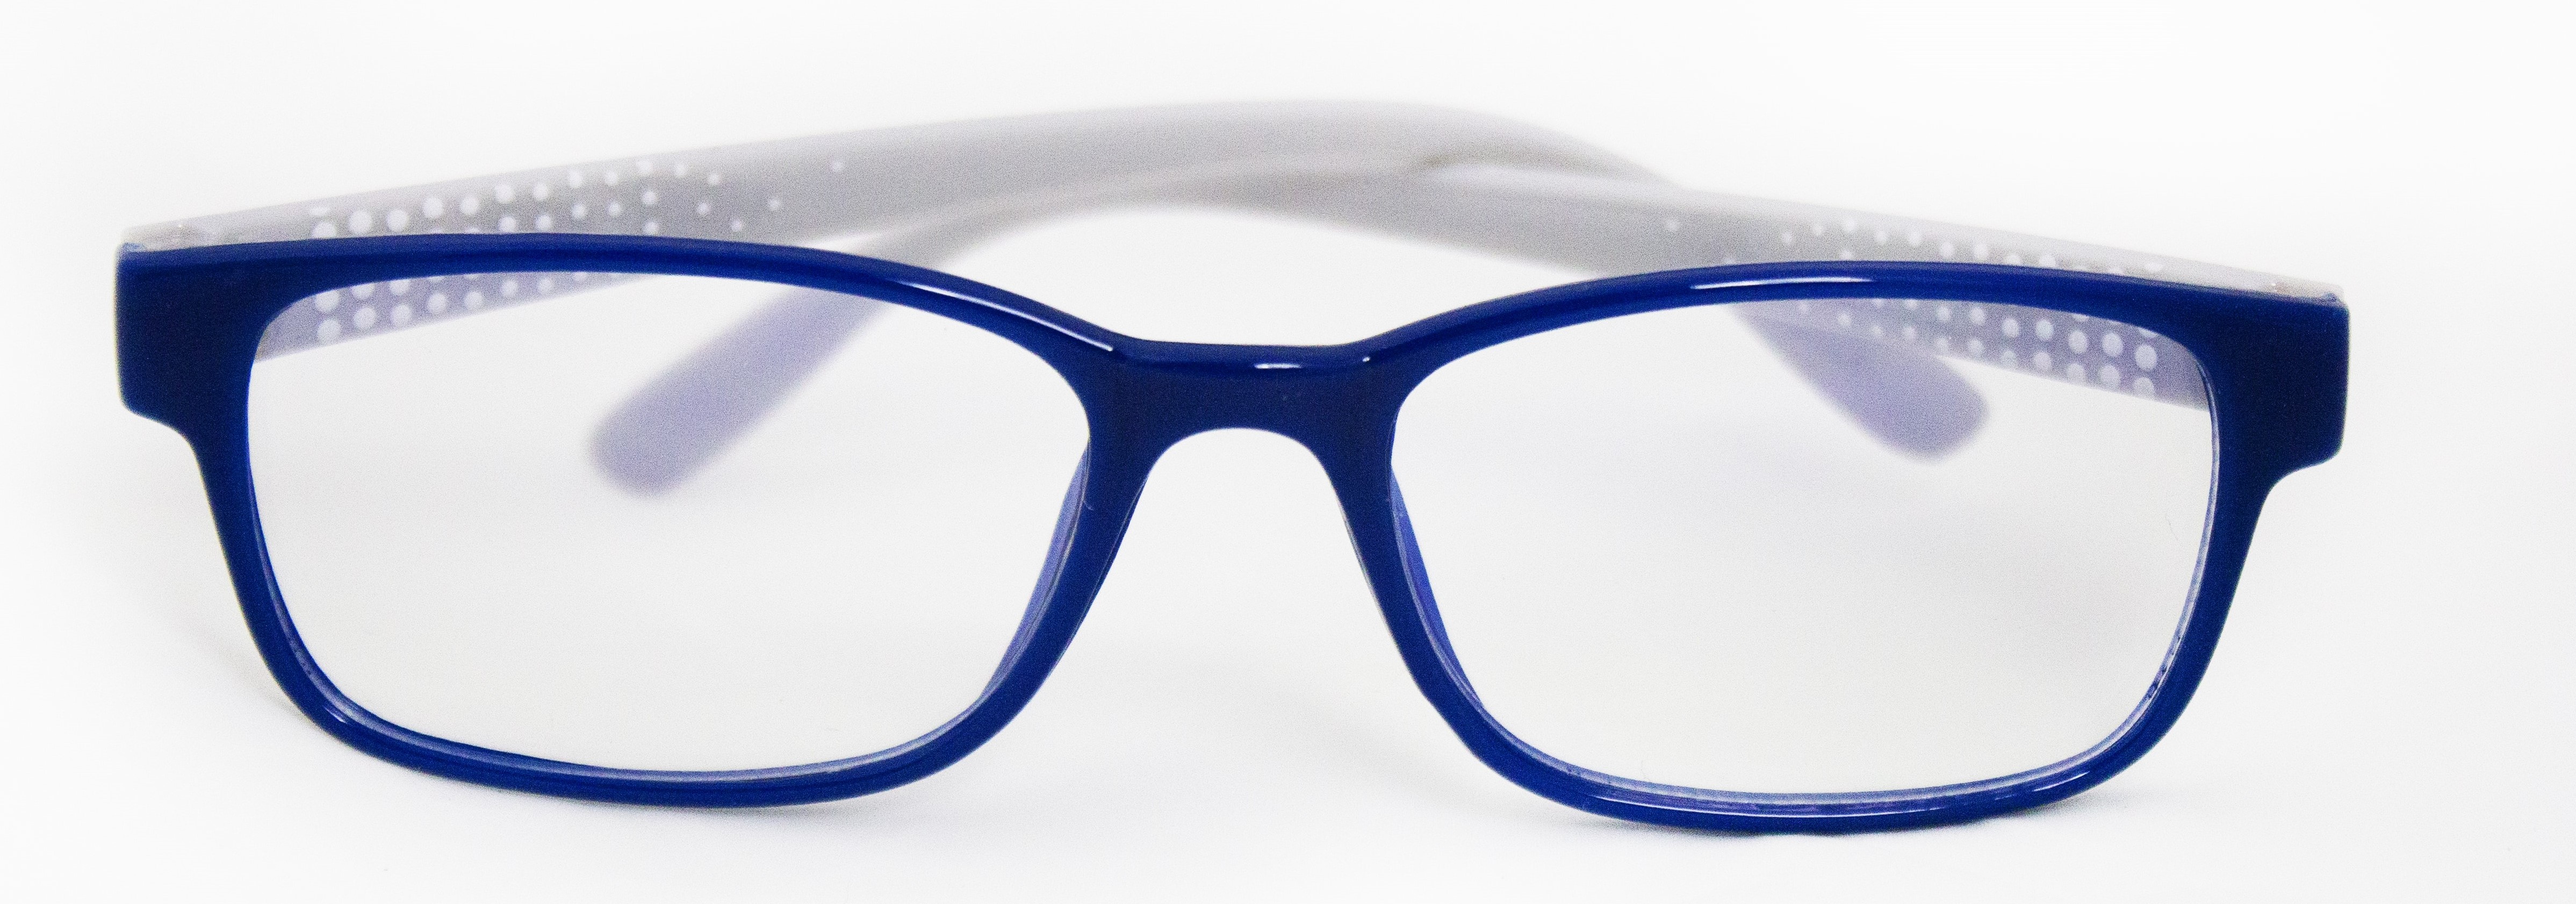 Custom Blue Light Glasses